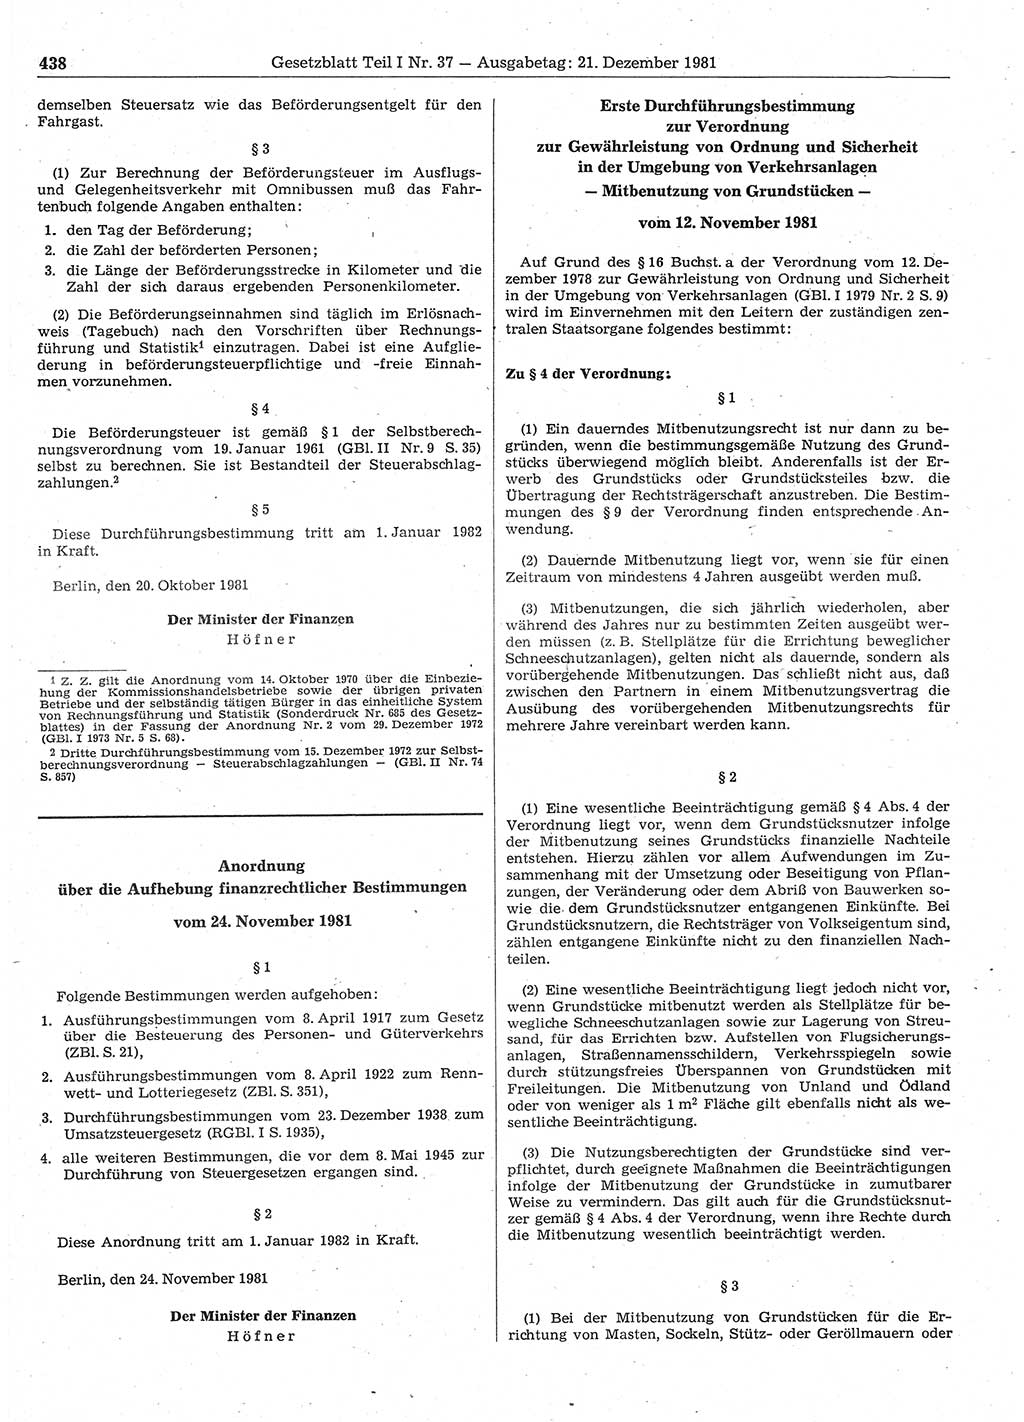 Gesetzblatt (GBl.) der Deutschen Demokratischen Republik (DDR) Teil Ⅰ 1981, Seite 438 (GBl. DDR Ⅰ 1981, S. 438)